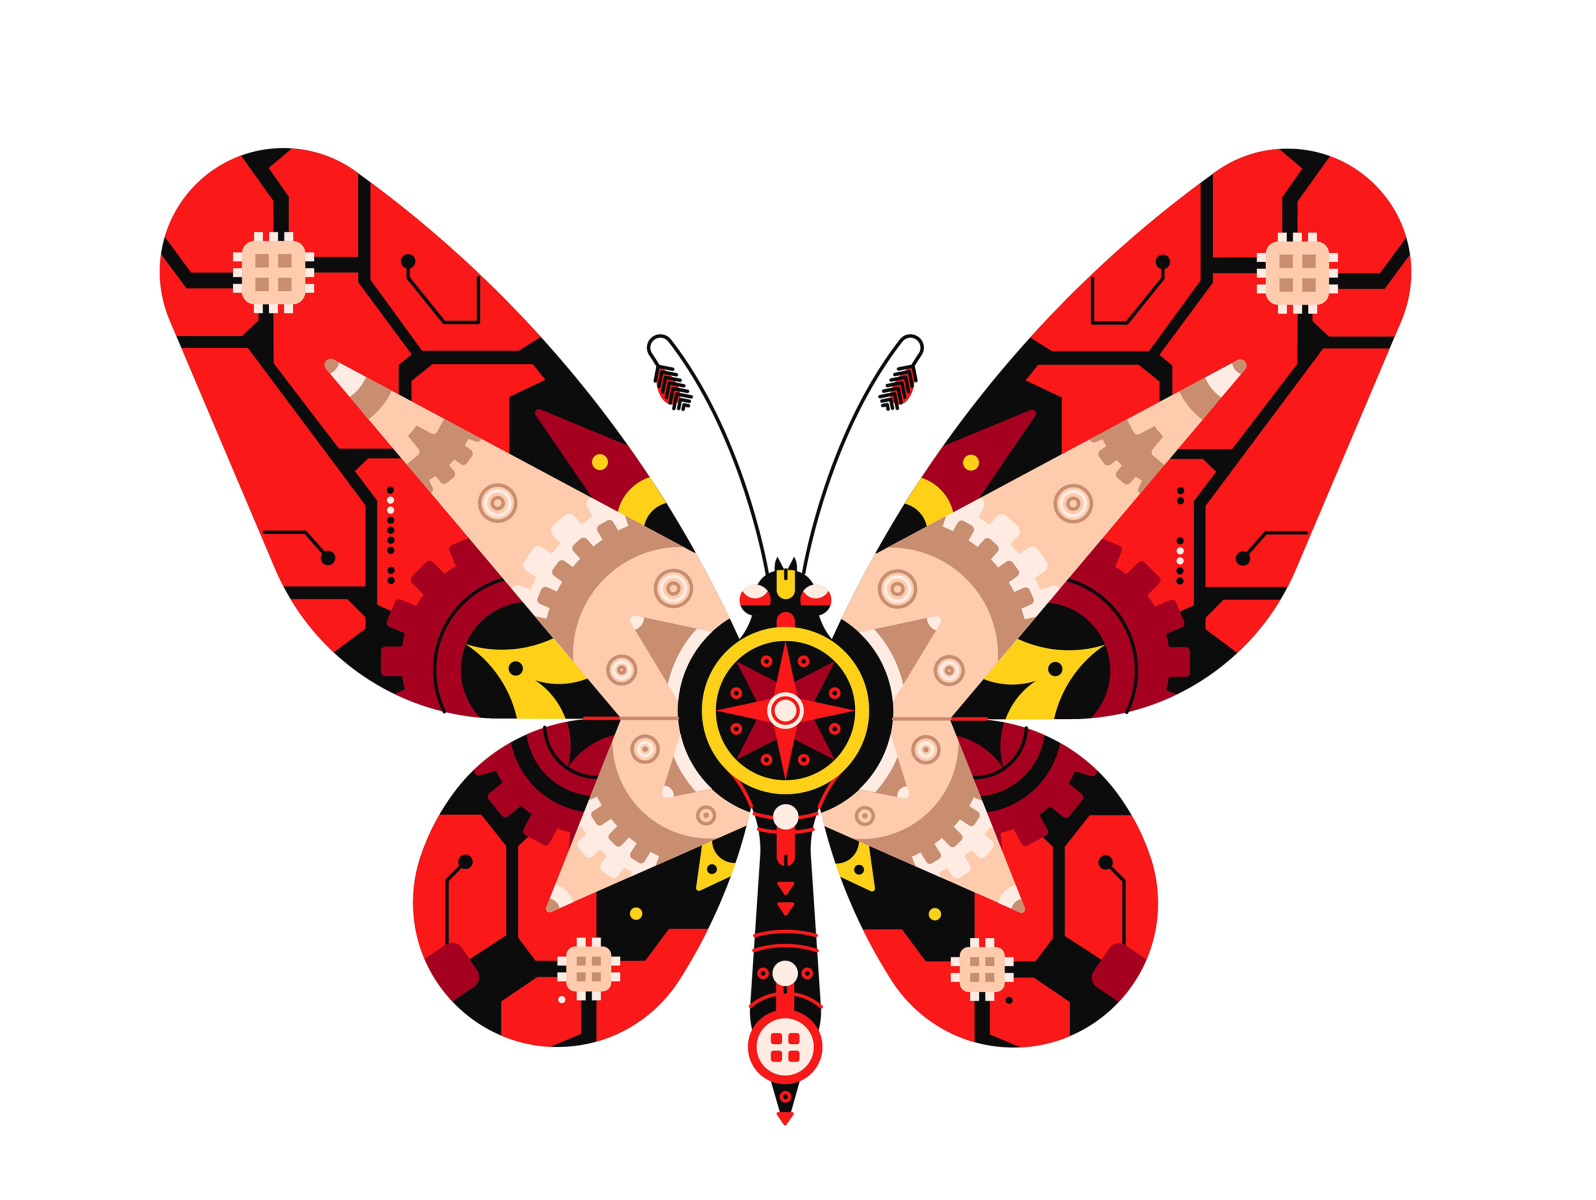 Berkley Illustration - Butterfly at